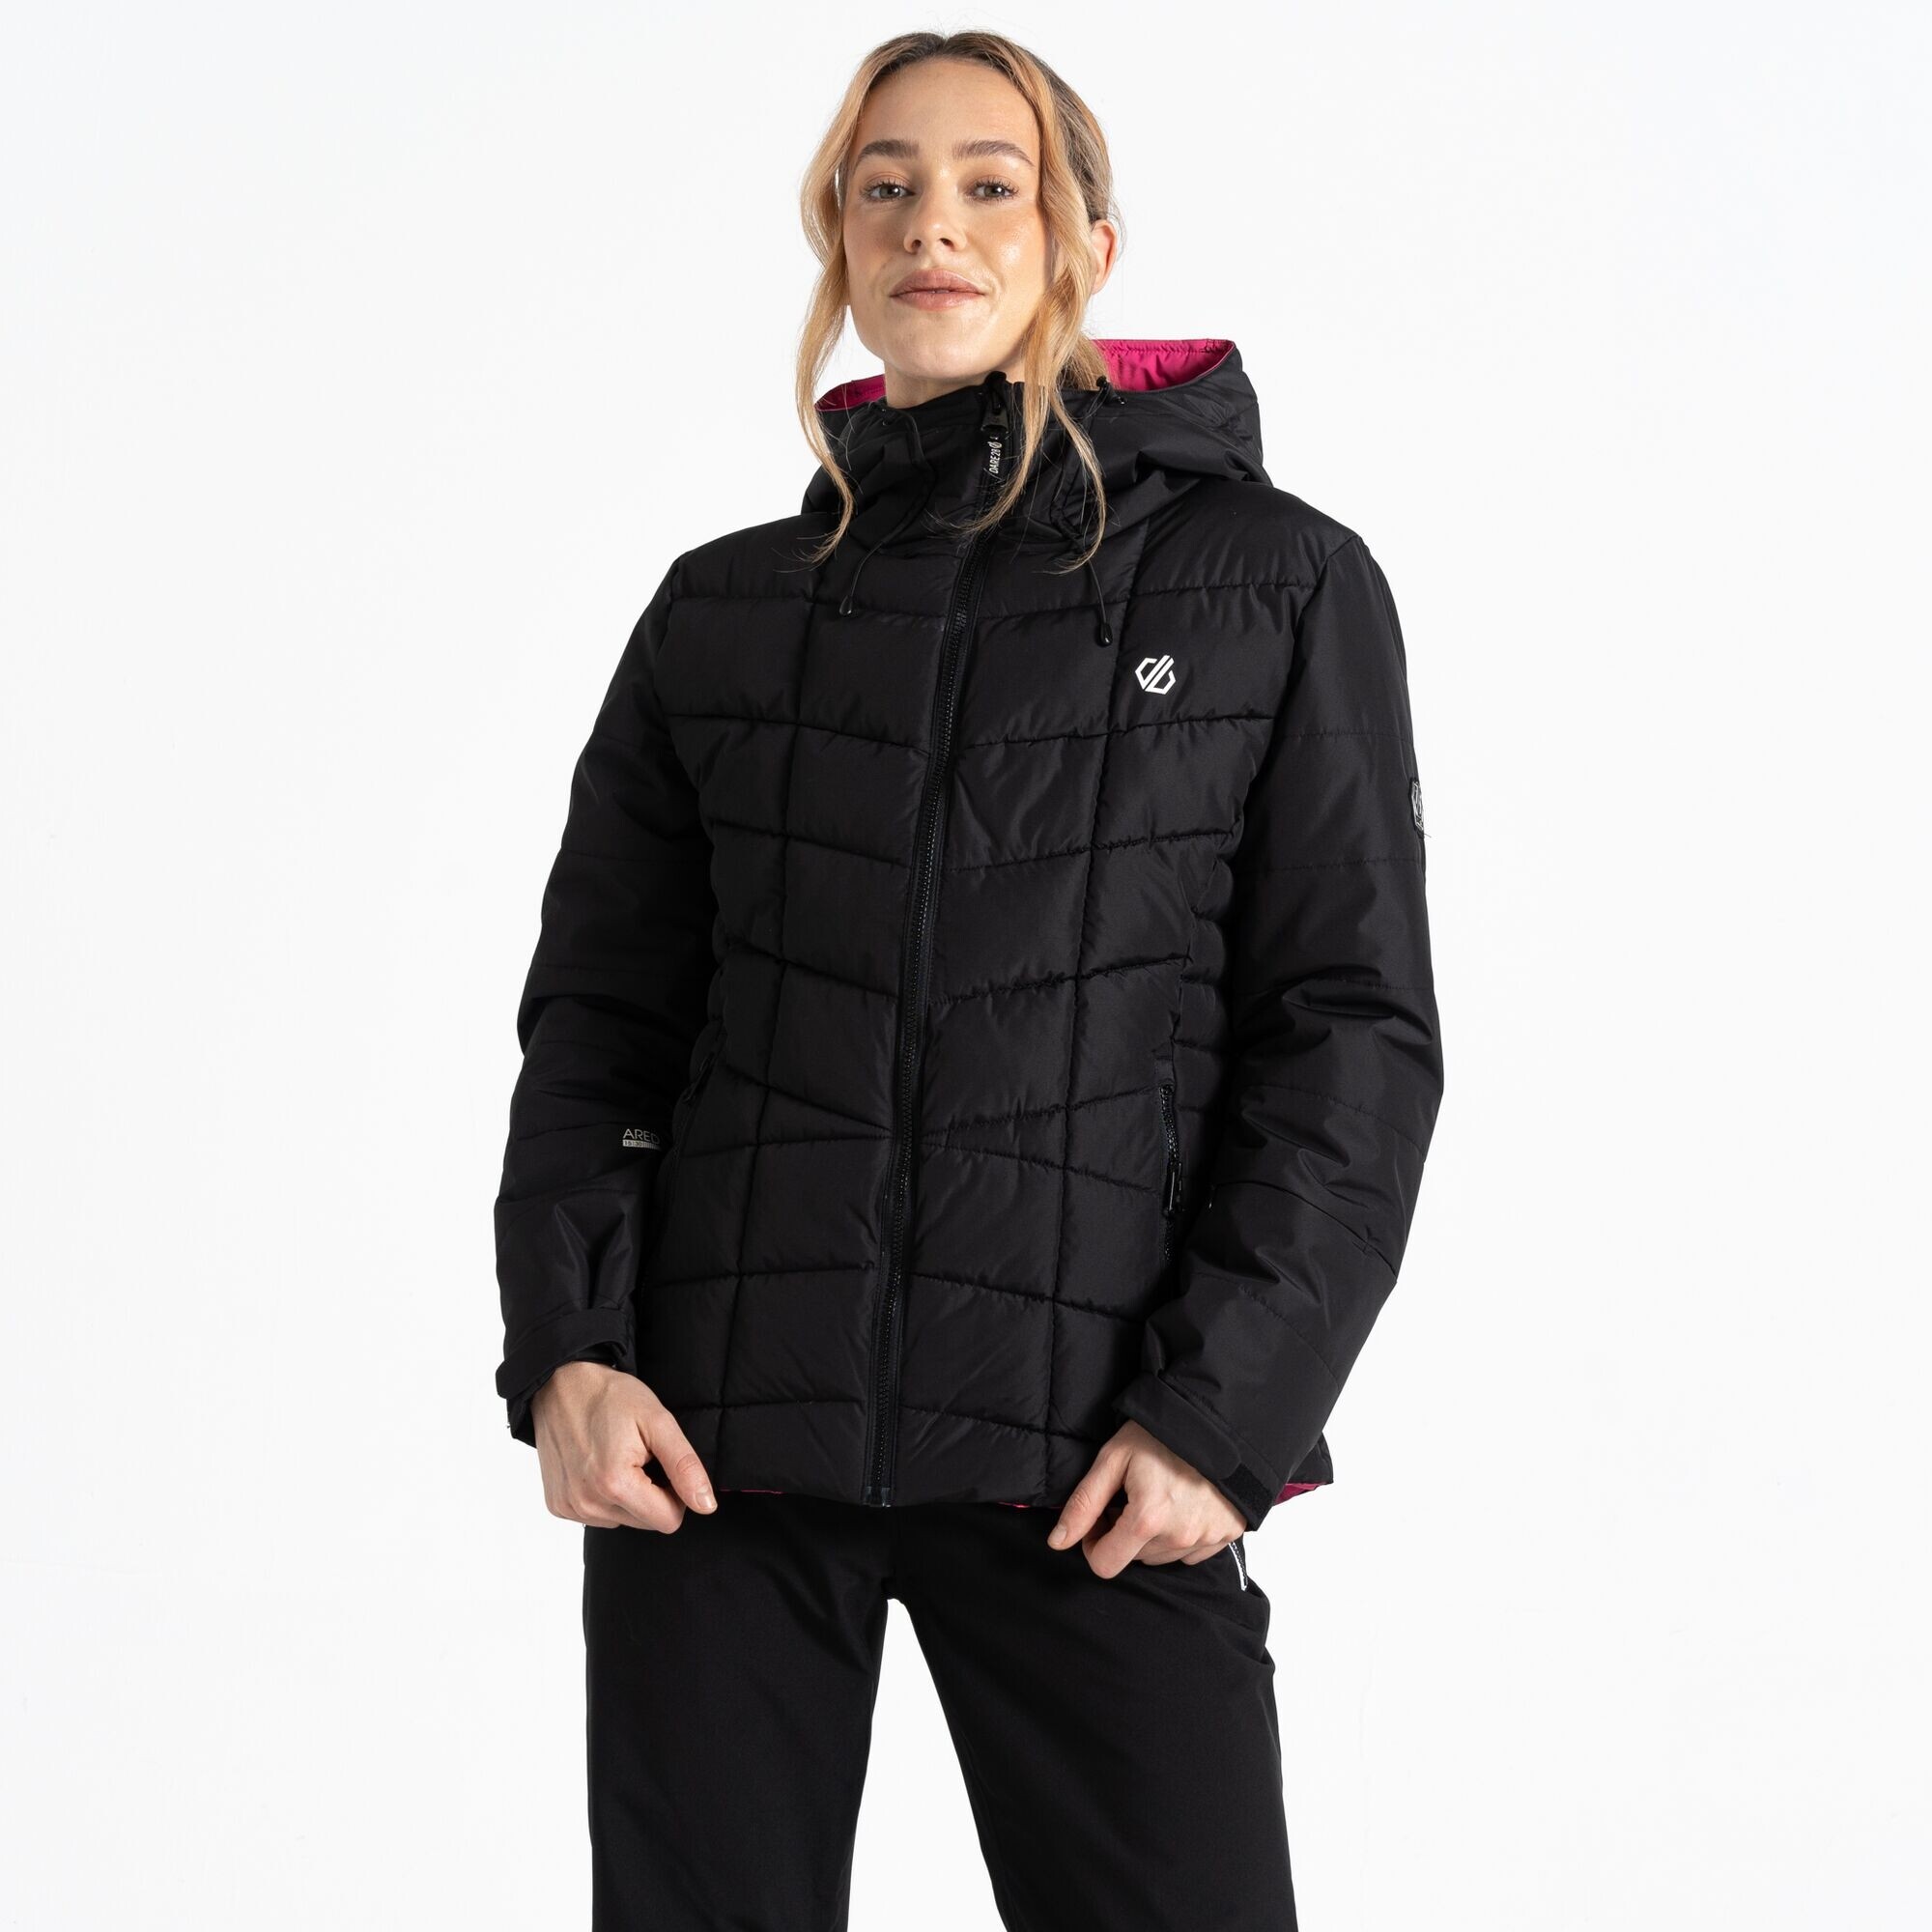 Dámská lyžařská bunda Blindside Jacket DWP569-800 černá - Dare2B 46